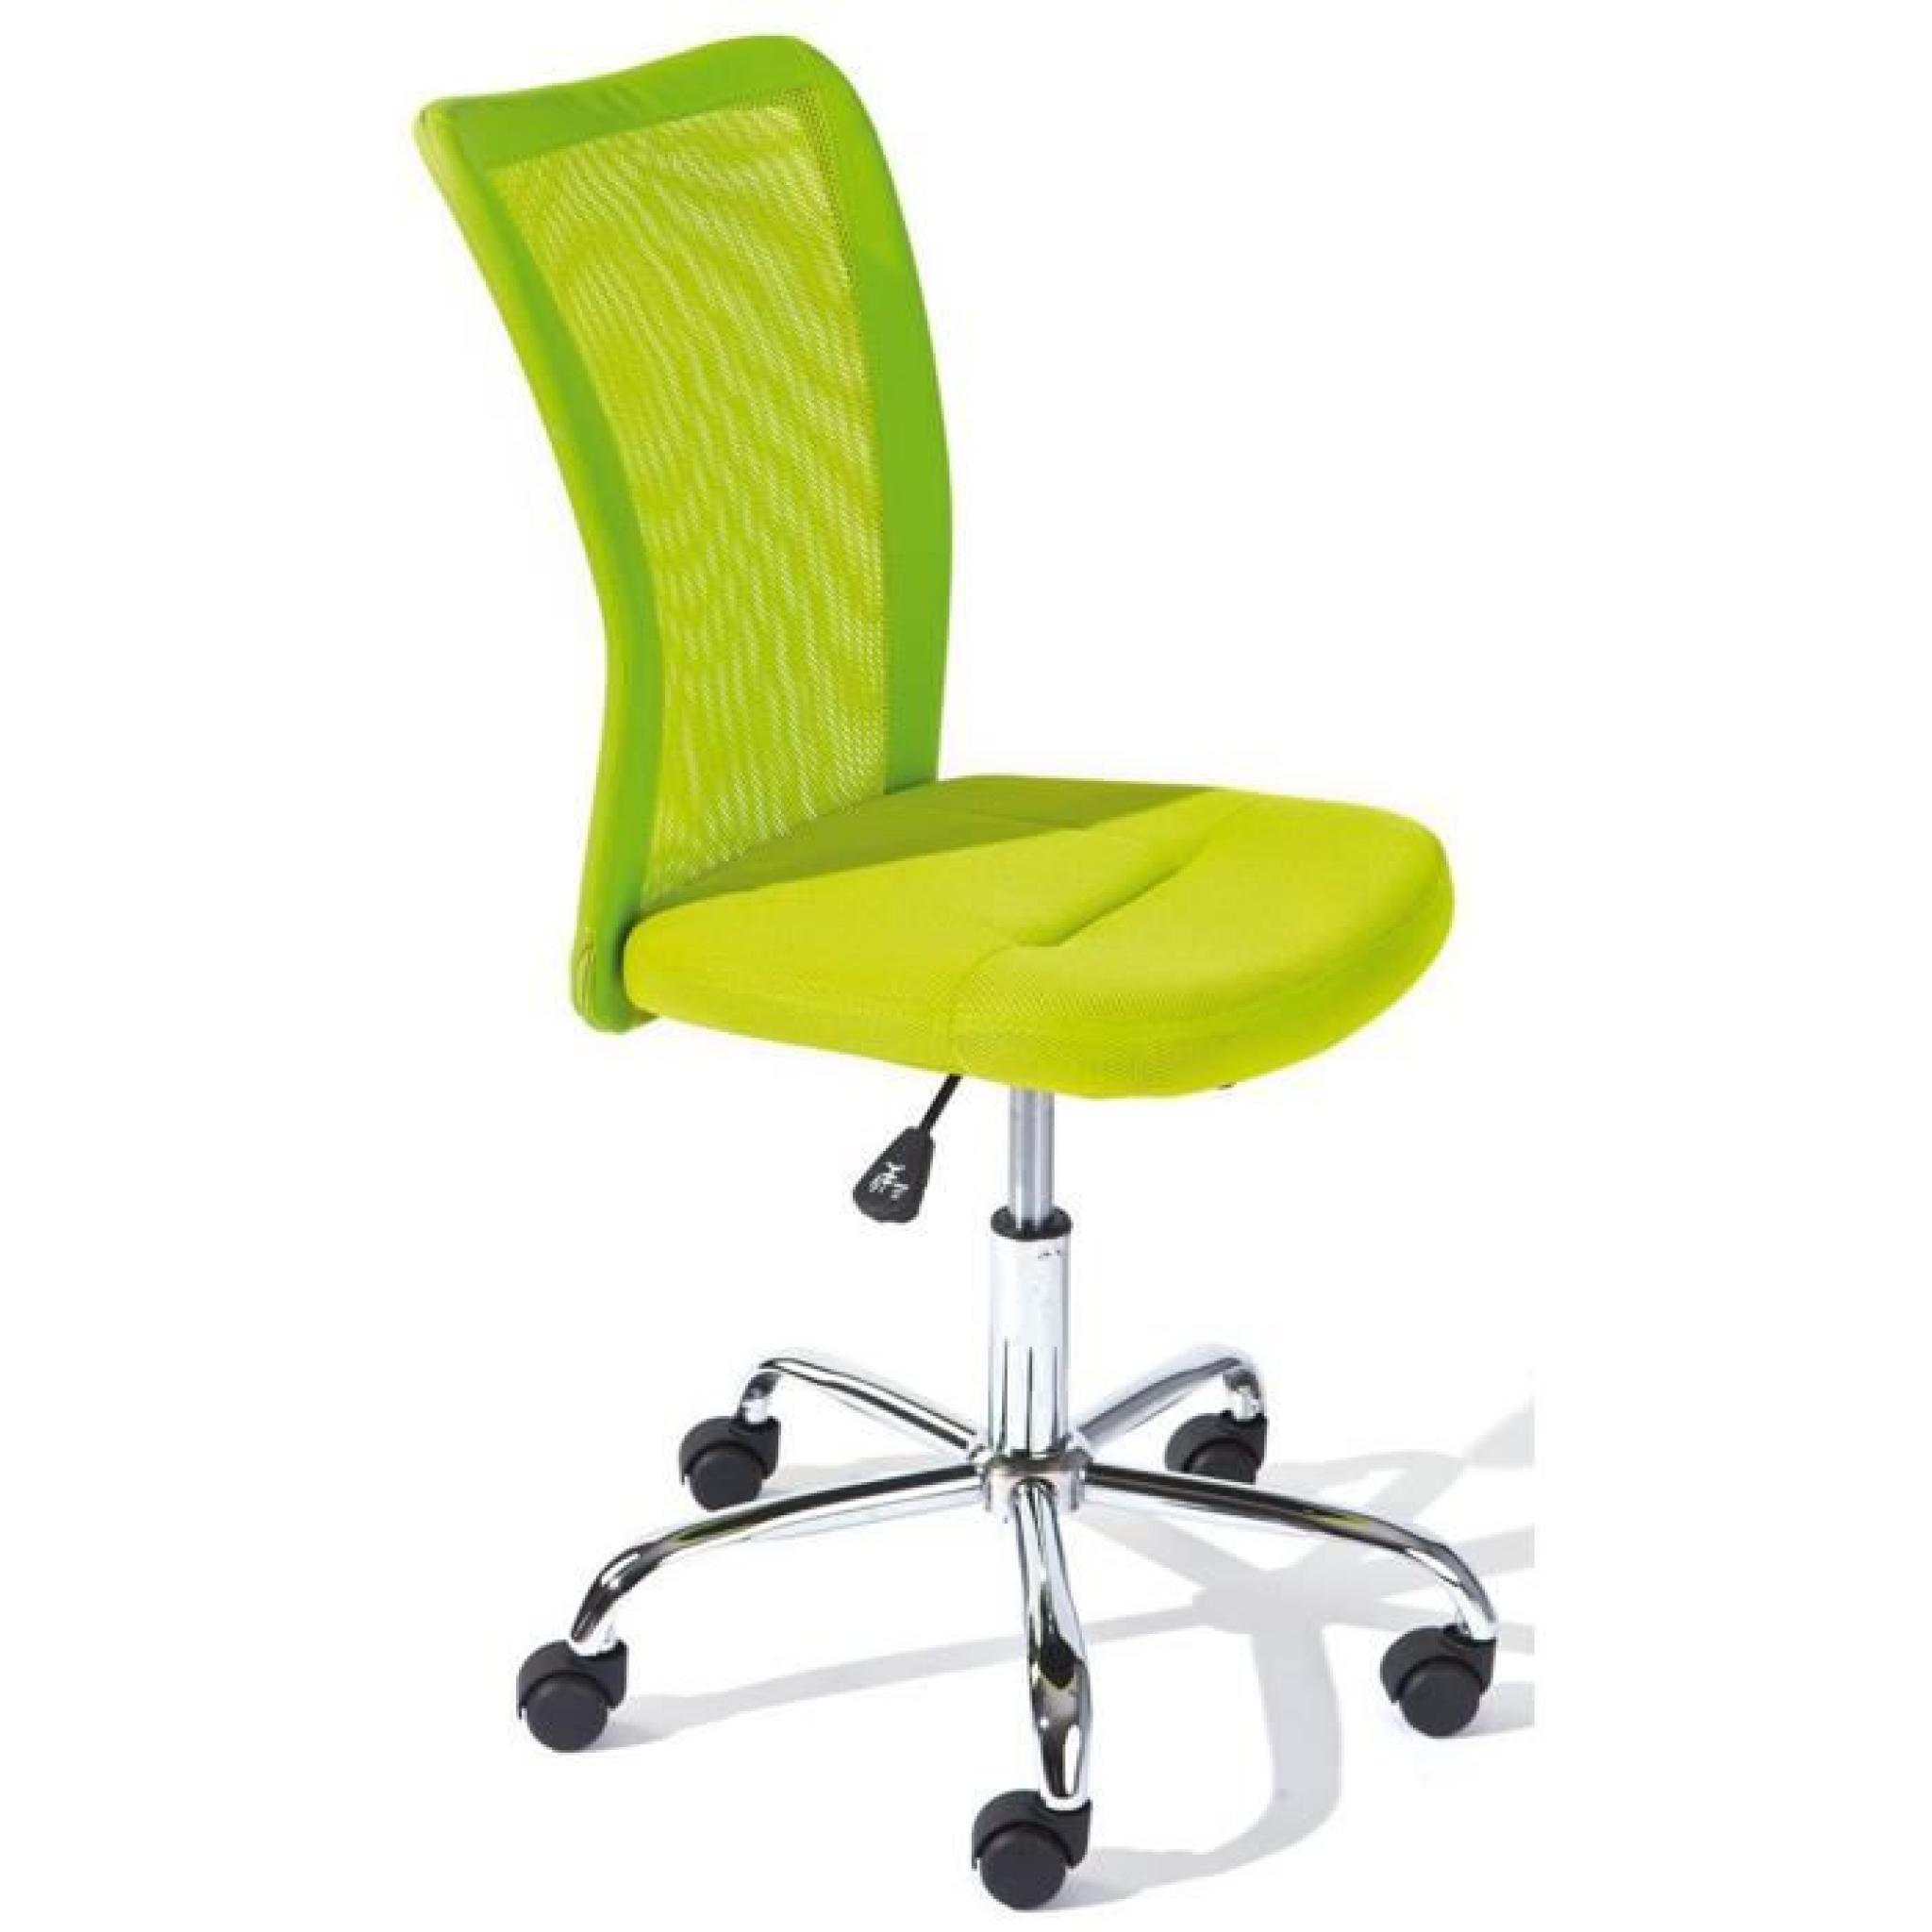 Chaise de bureau vert en polyester, Dim : L43 x H88 x P56 cm